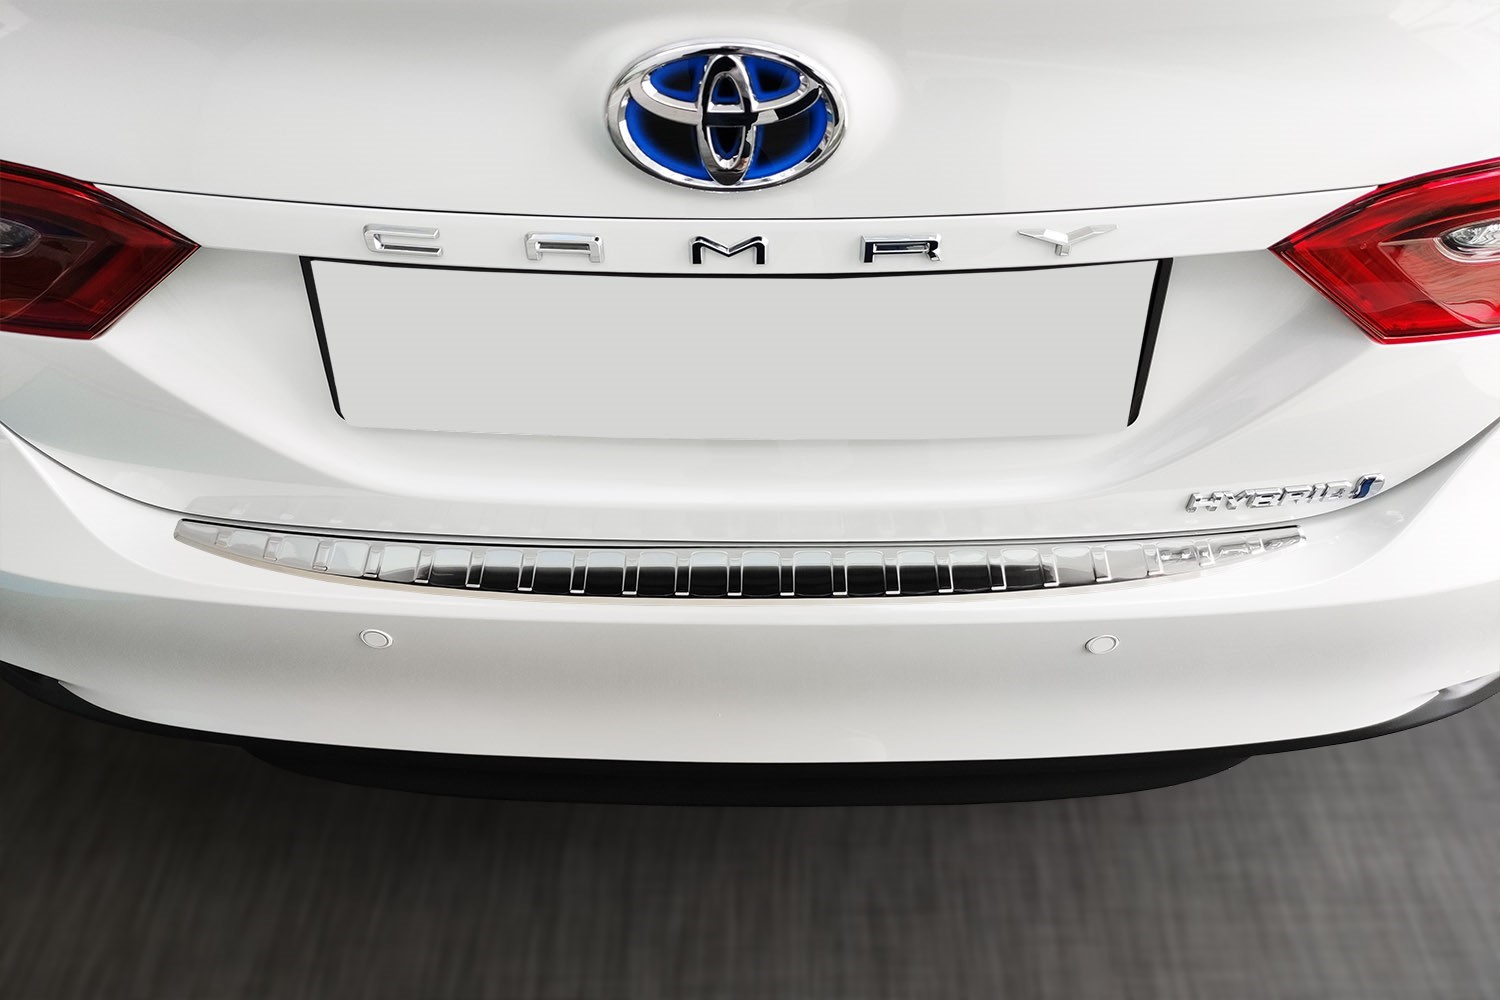 Protection de seuil de coffre Toyota Camry (XV70) 2019-présent 4 portes tricorps acier inox brossé